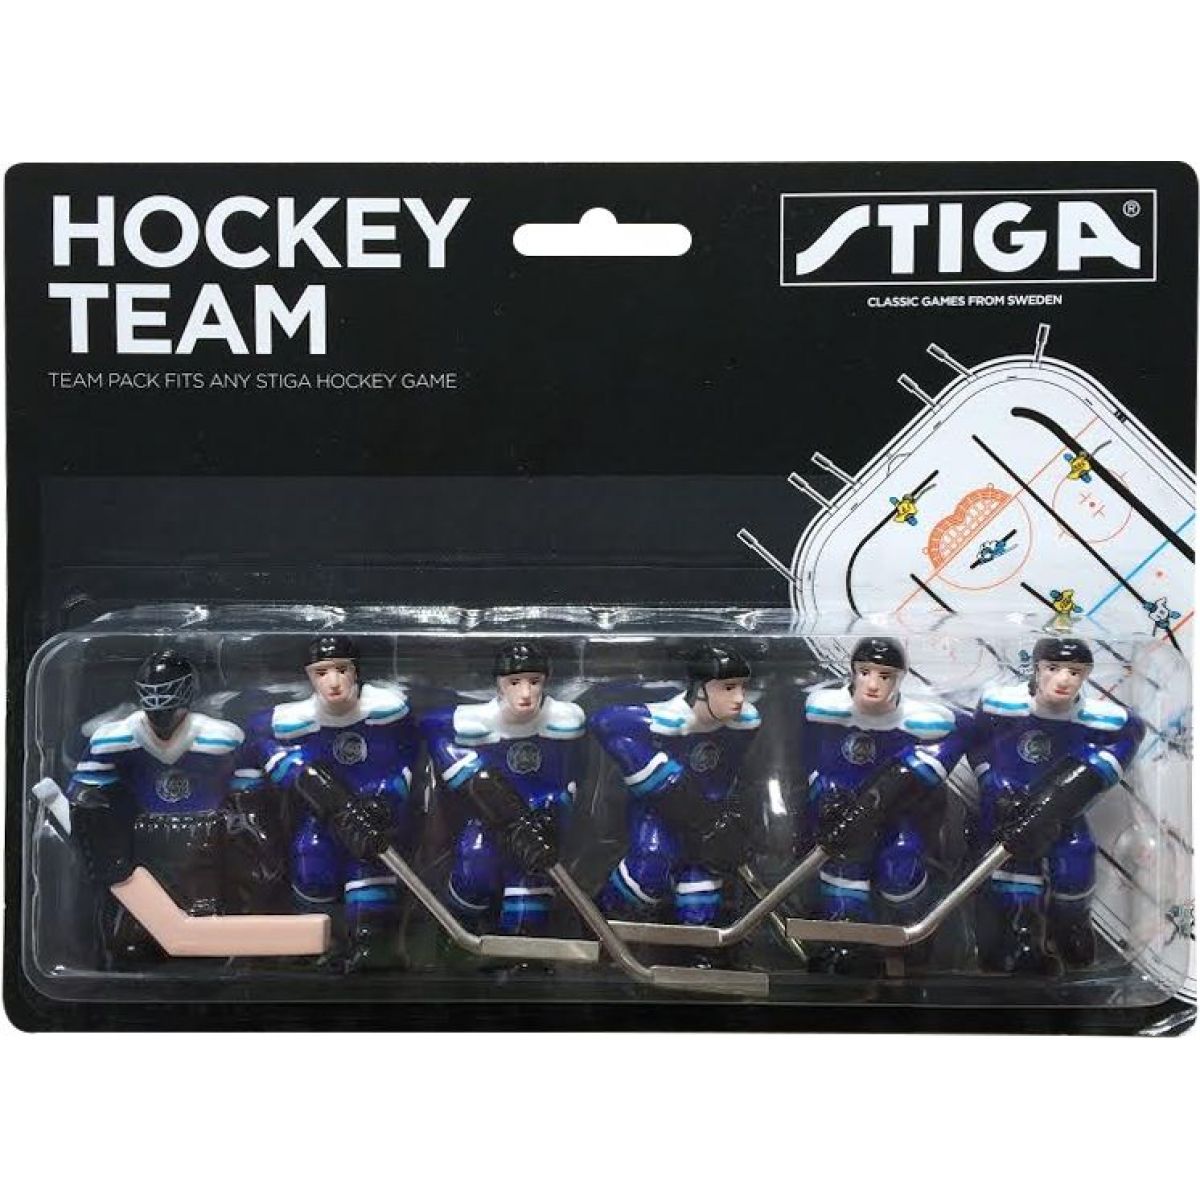 Stiga Hokejový tým - Liberec